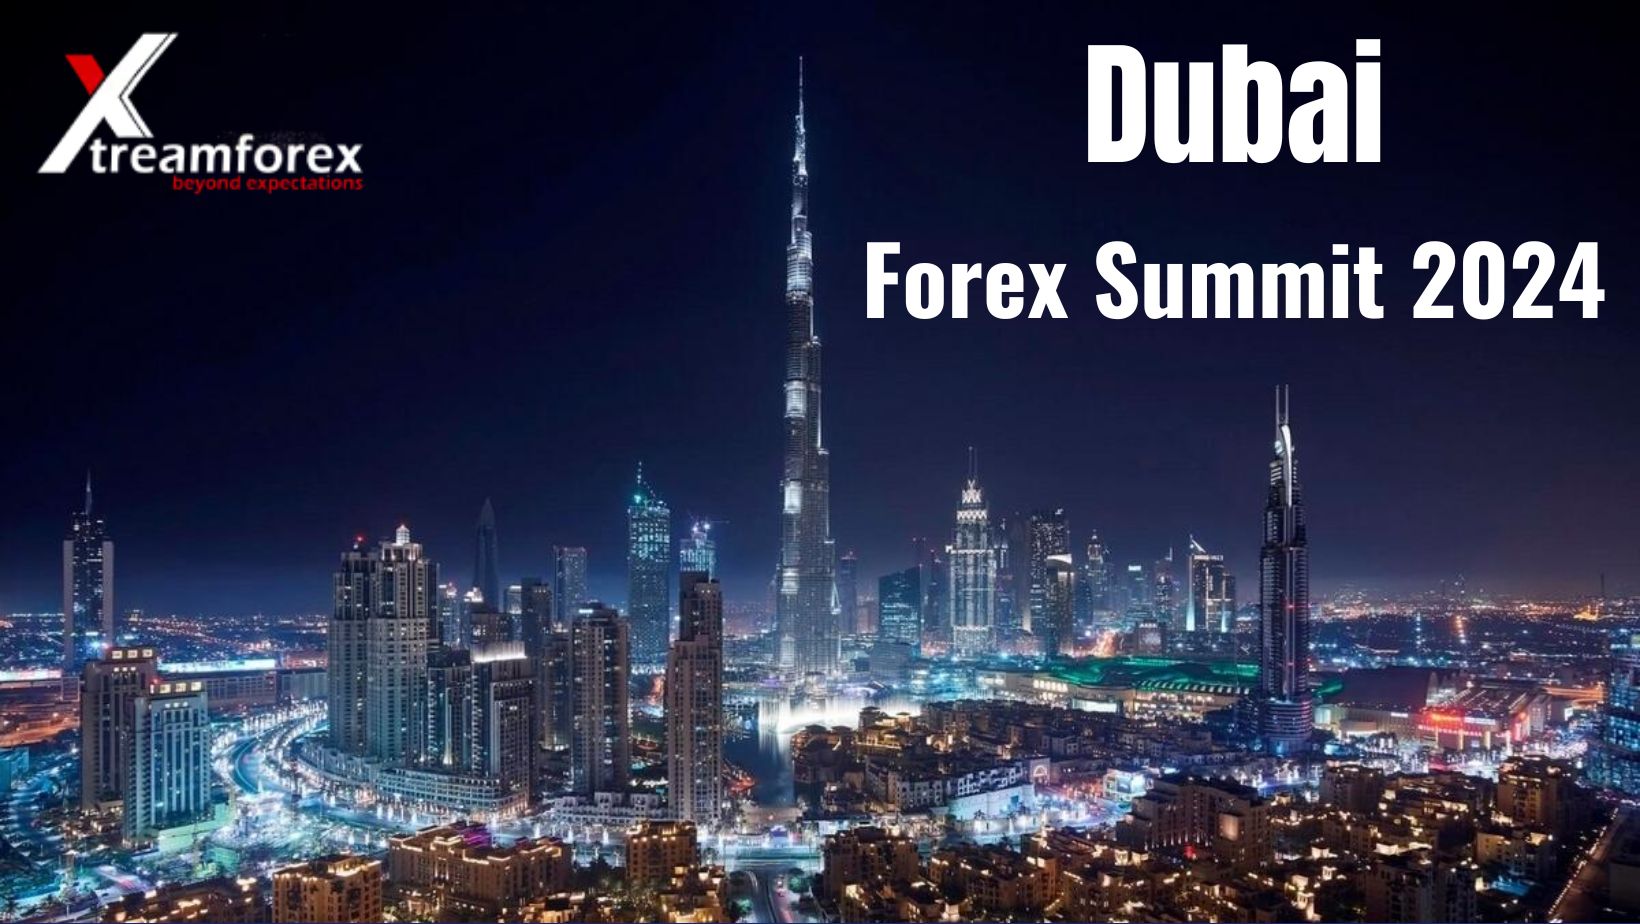 Dubai Forex Summit 